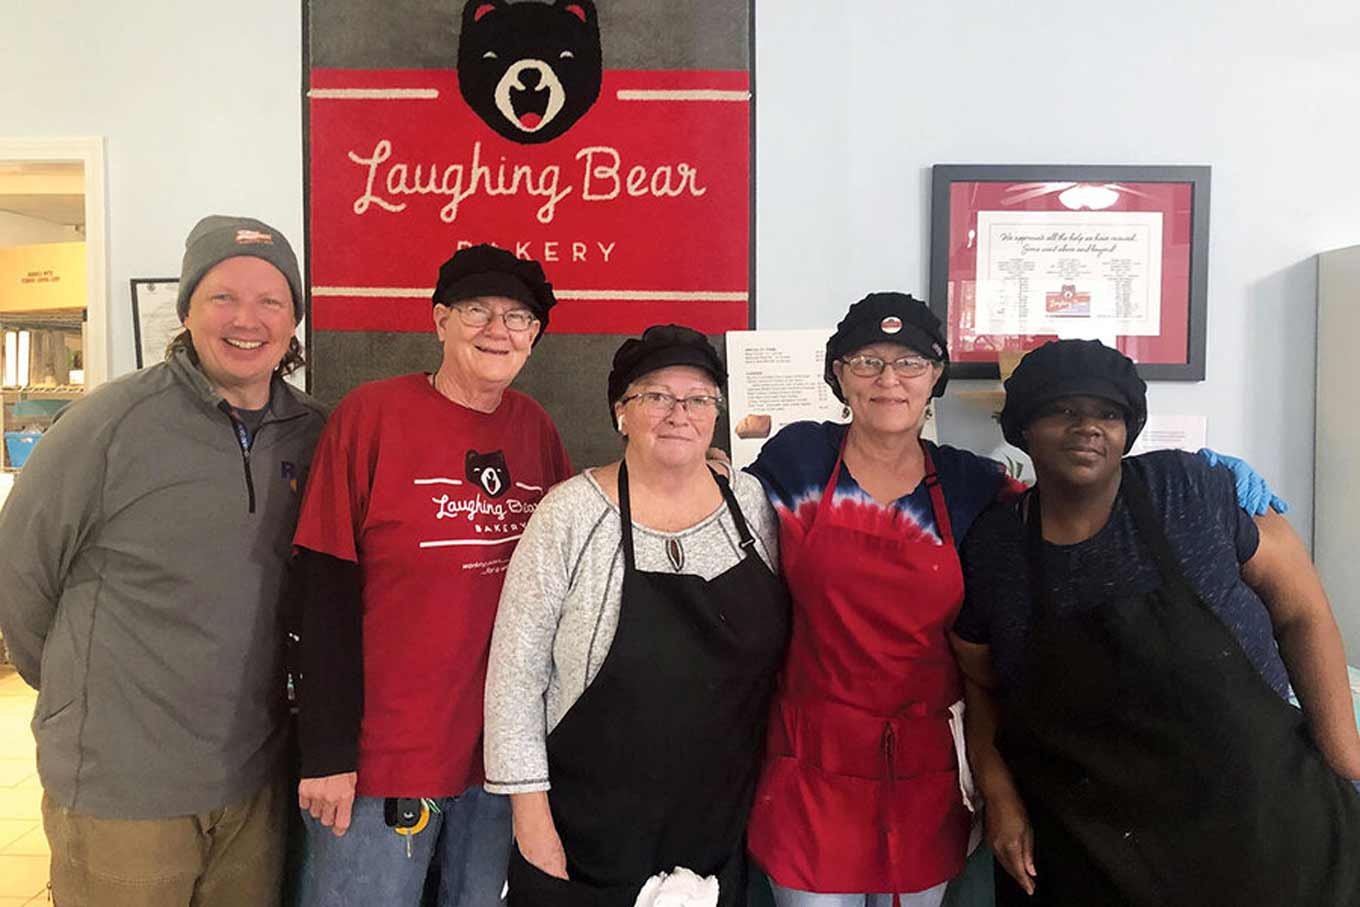 Medewerkers van de Laughing Bear Bakery poseren met een glimlach voor een groepsfoto